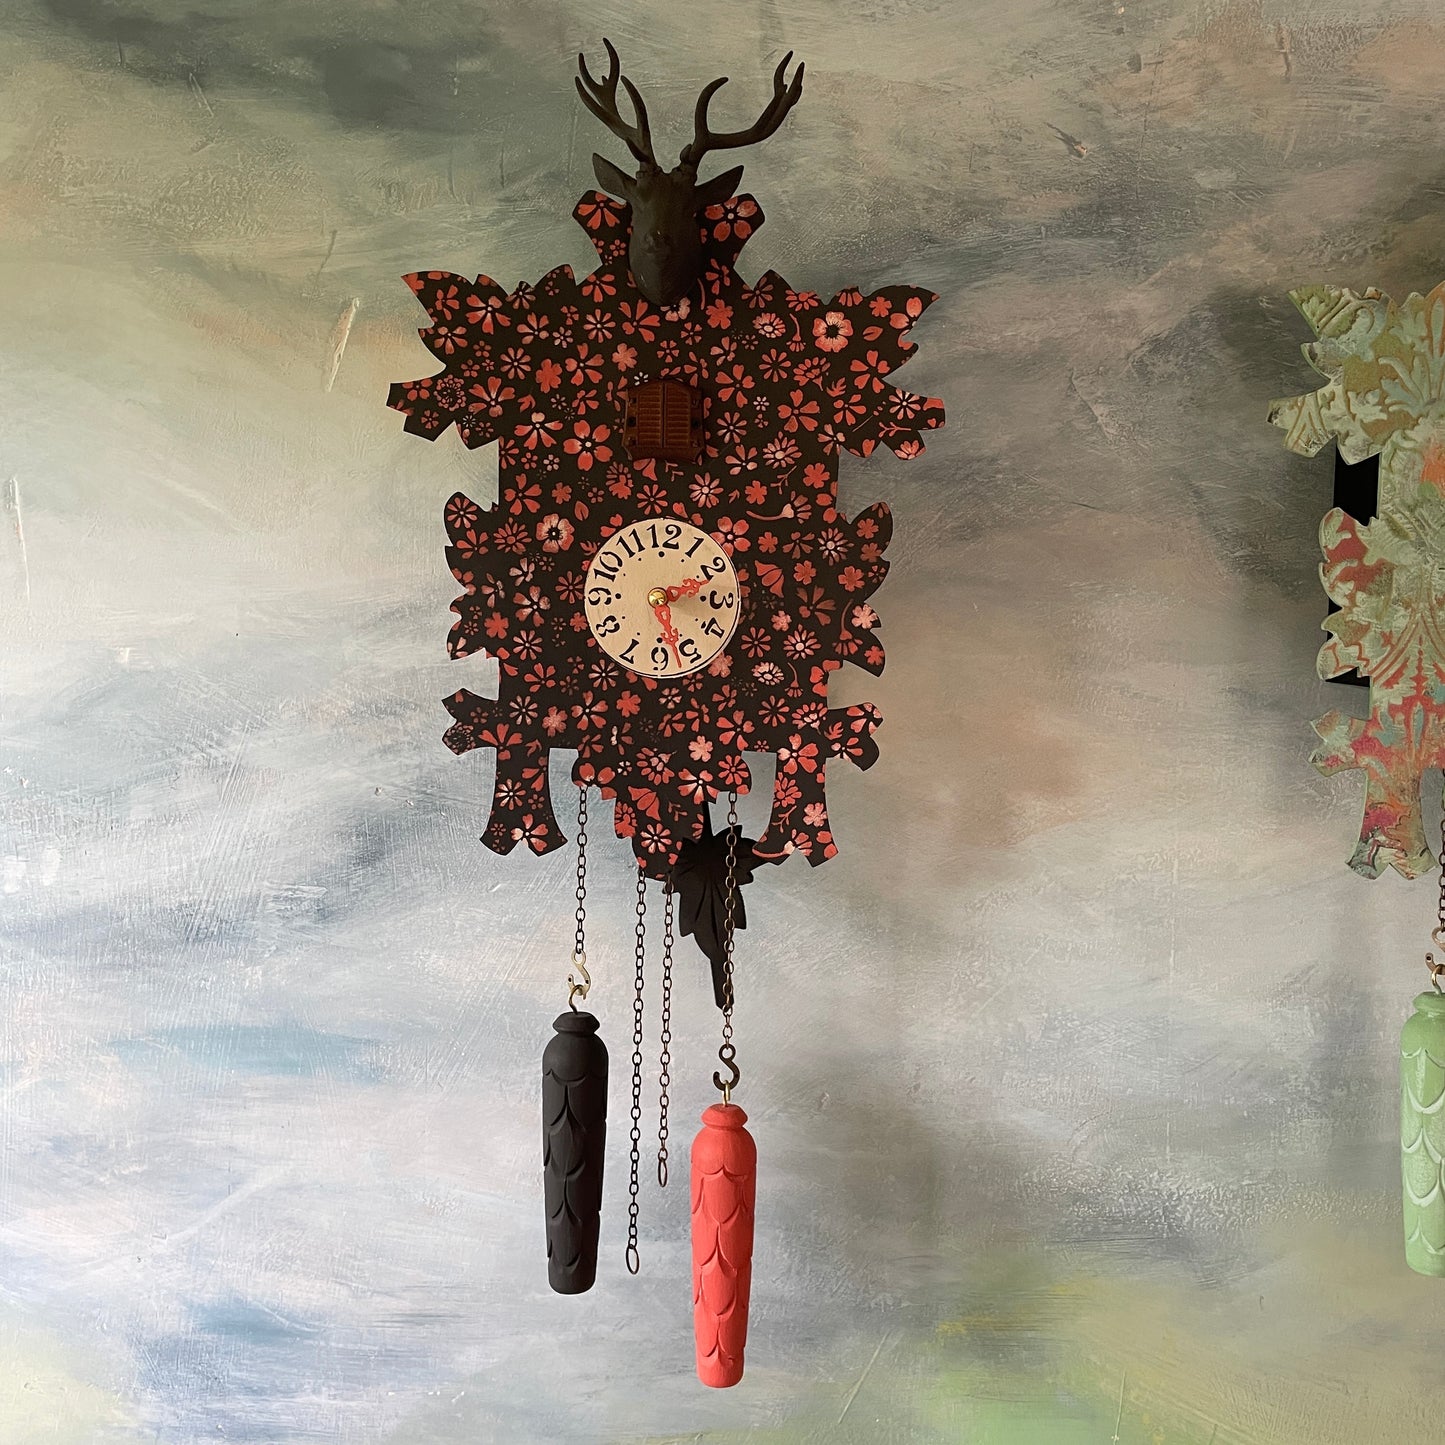 *NOUVEAU* Atelier "Colorez votre coucou" - concevez une véritable horloge à coucou de la Forêt-Noire